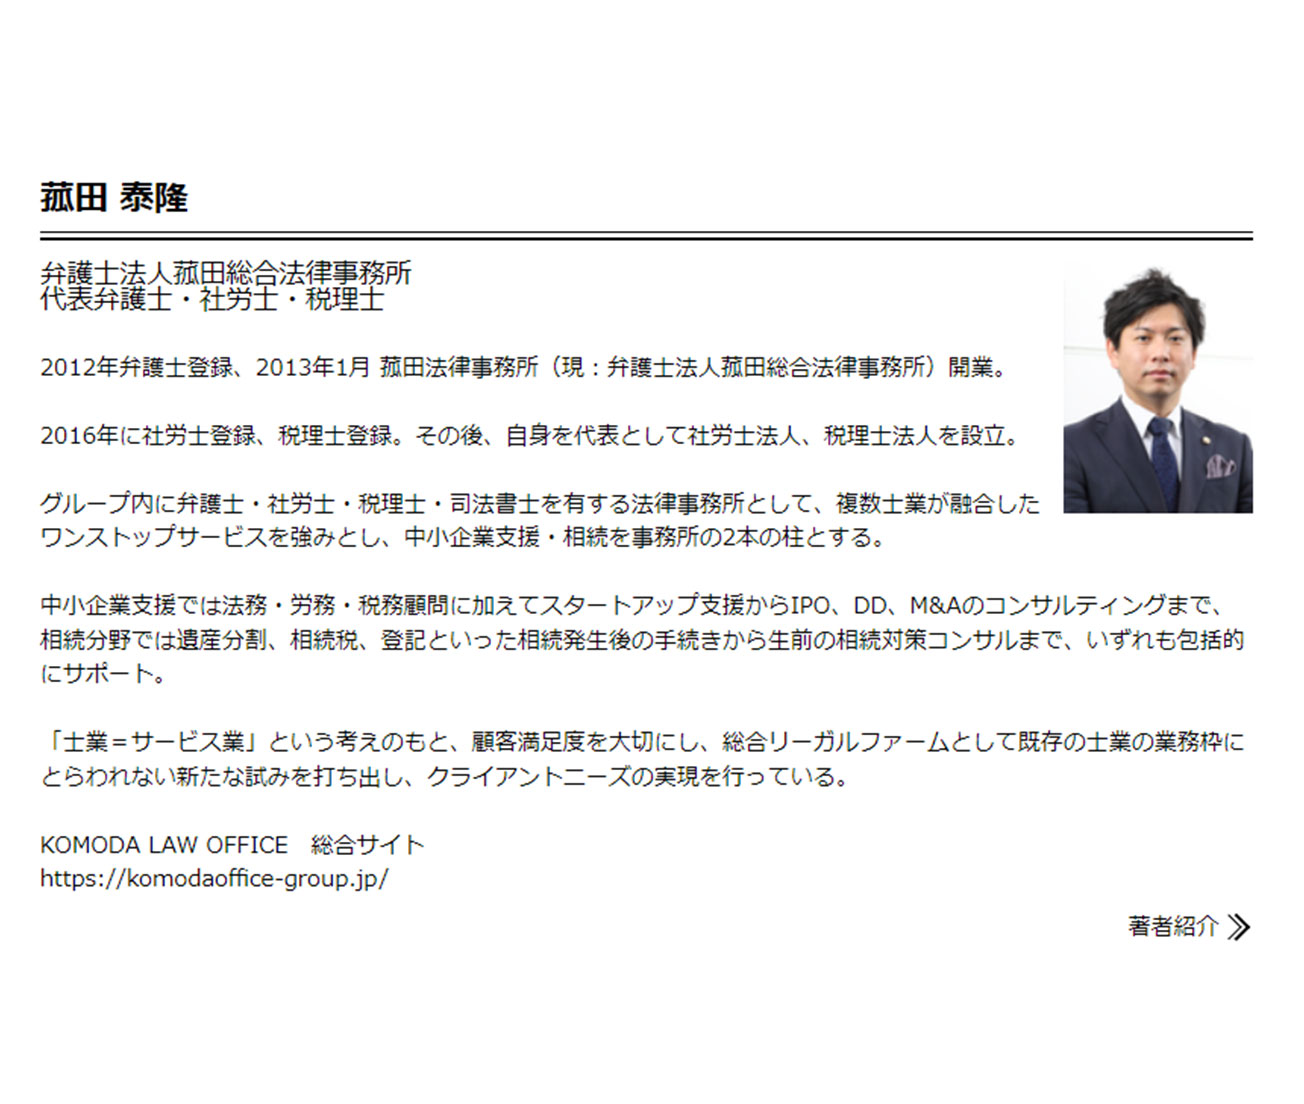 【特別企画】幻冬舎ゴールドオンラインにて菰田弁護士監修の記事が掲載されております。